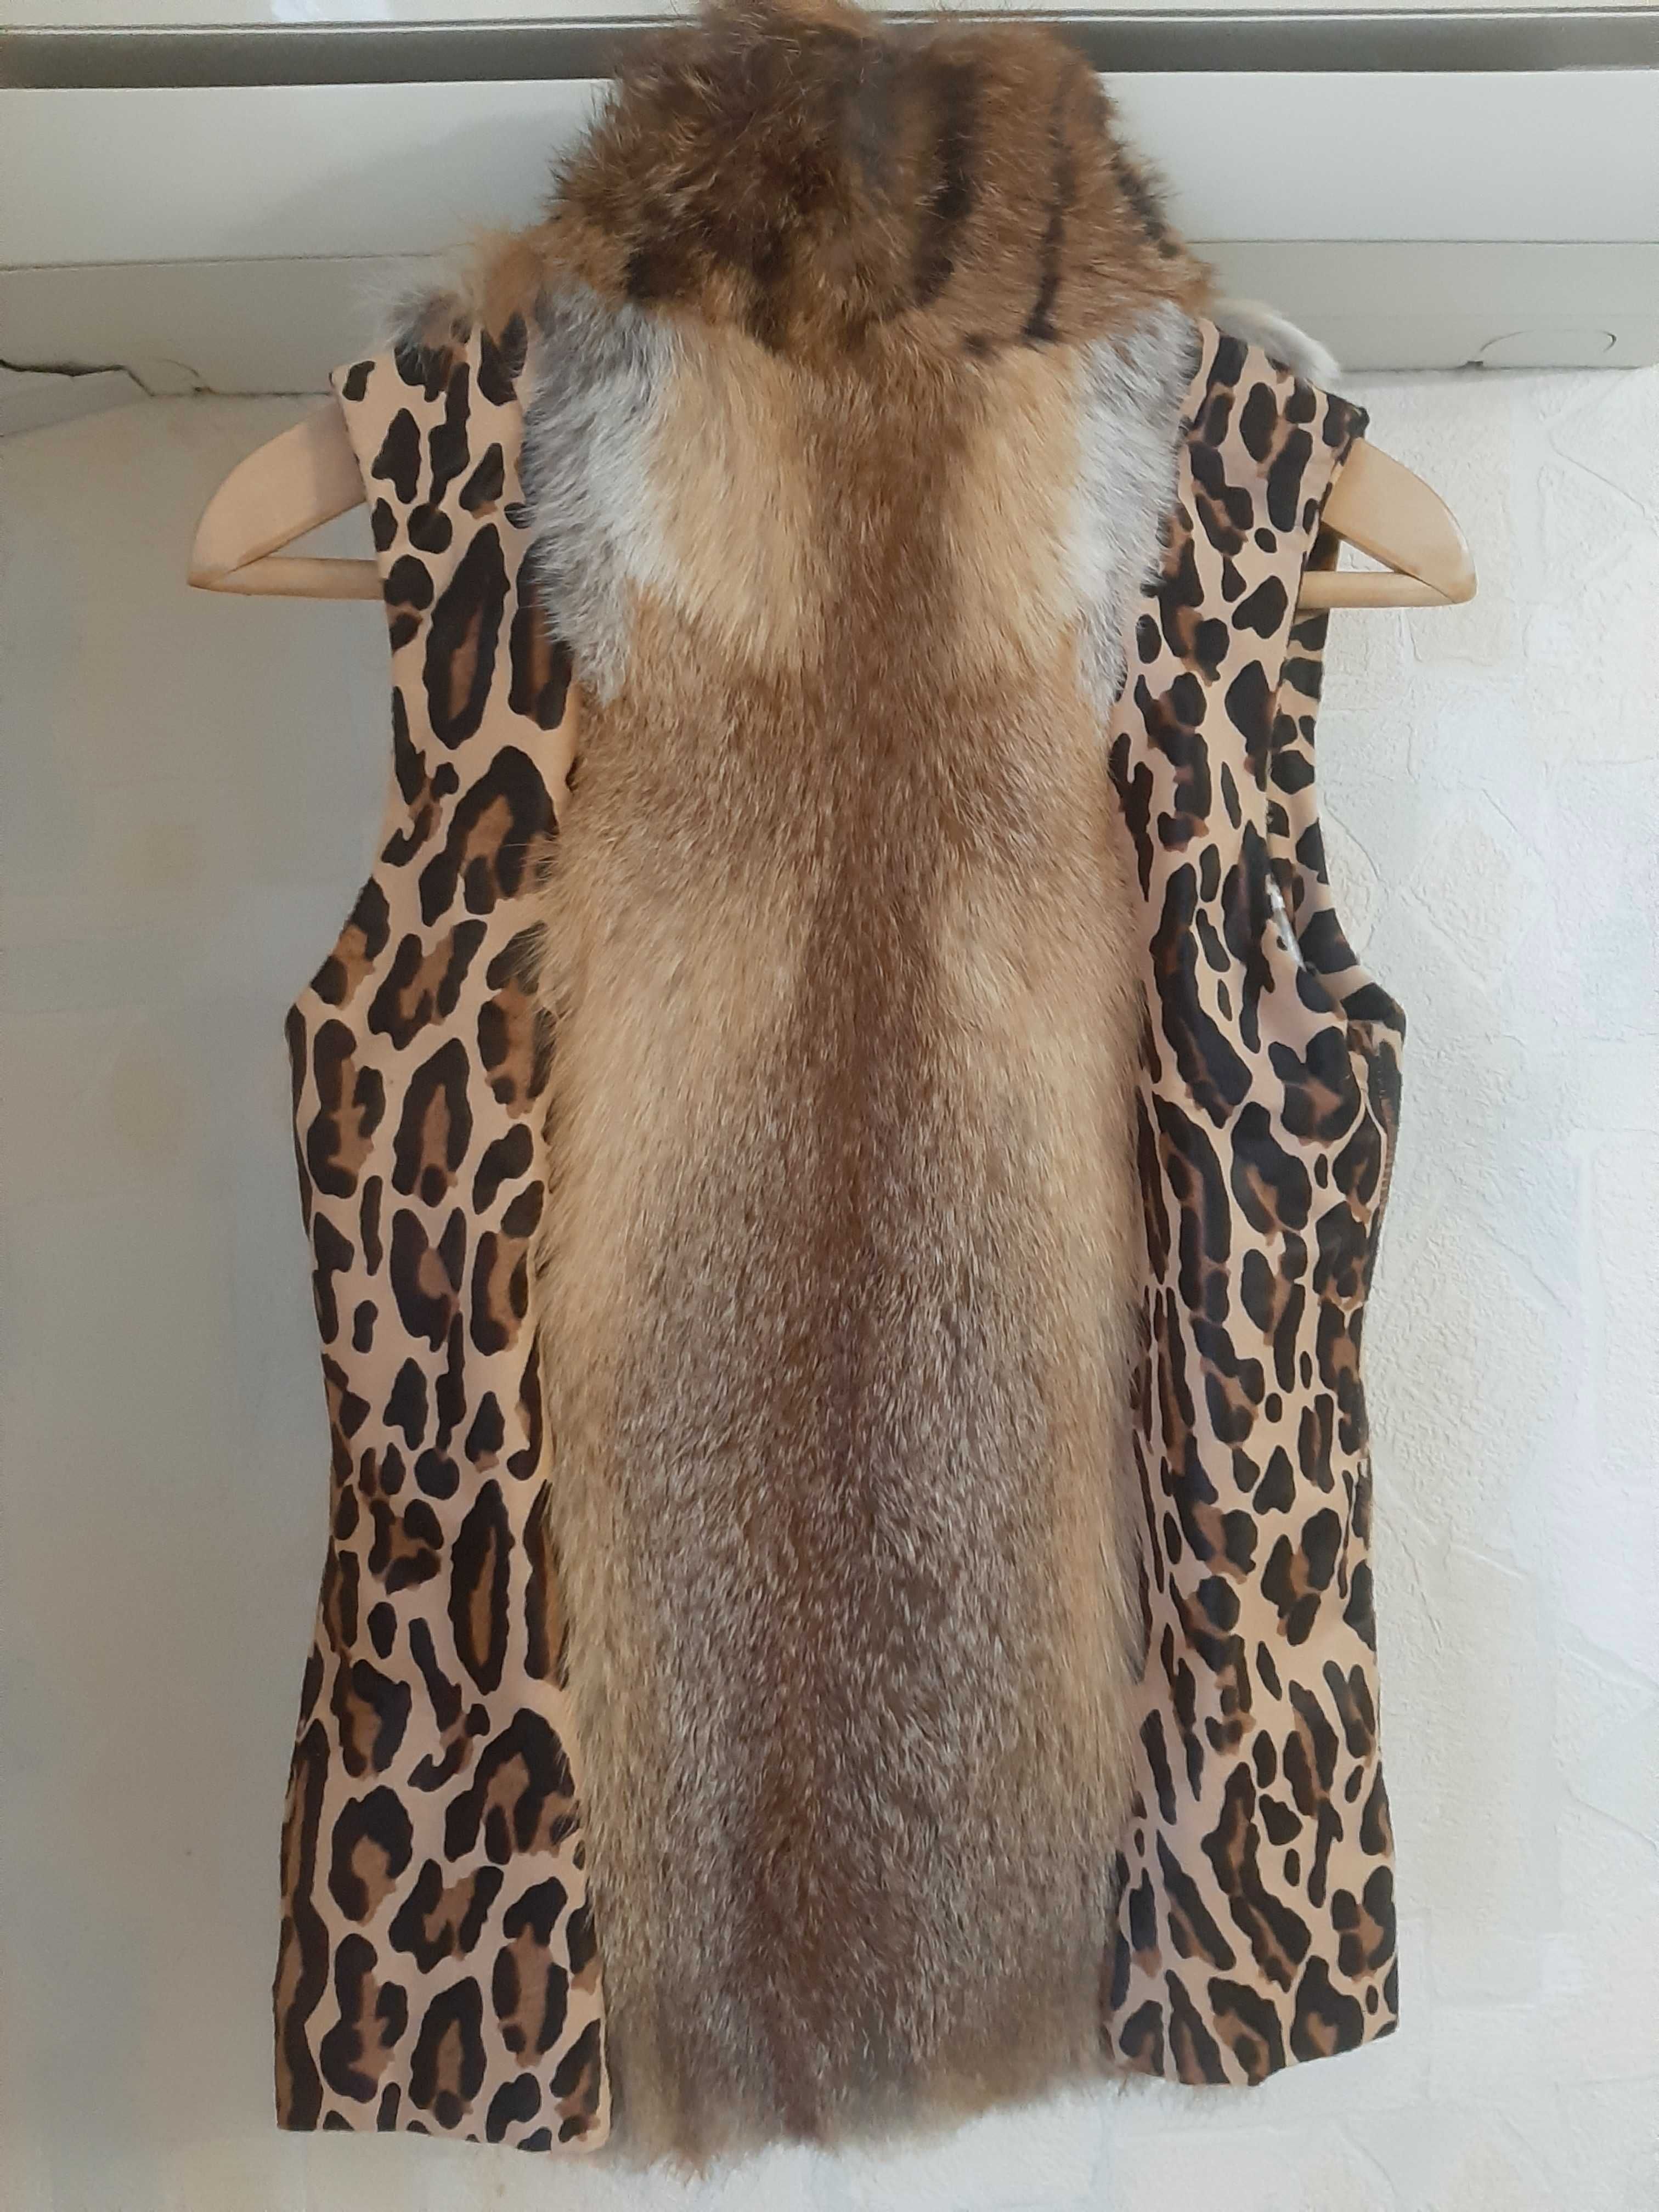 Куртка кожаная и меховой жилет из лисы. Комплектом или отдельно. 44-46